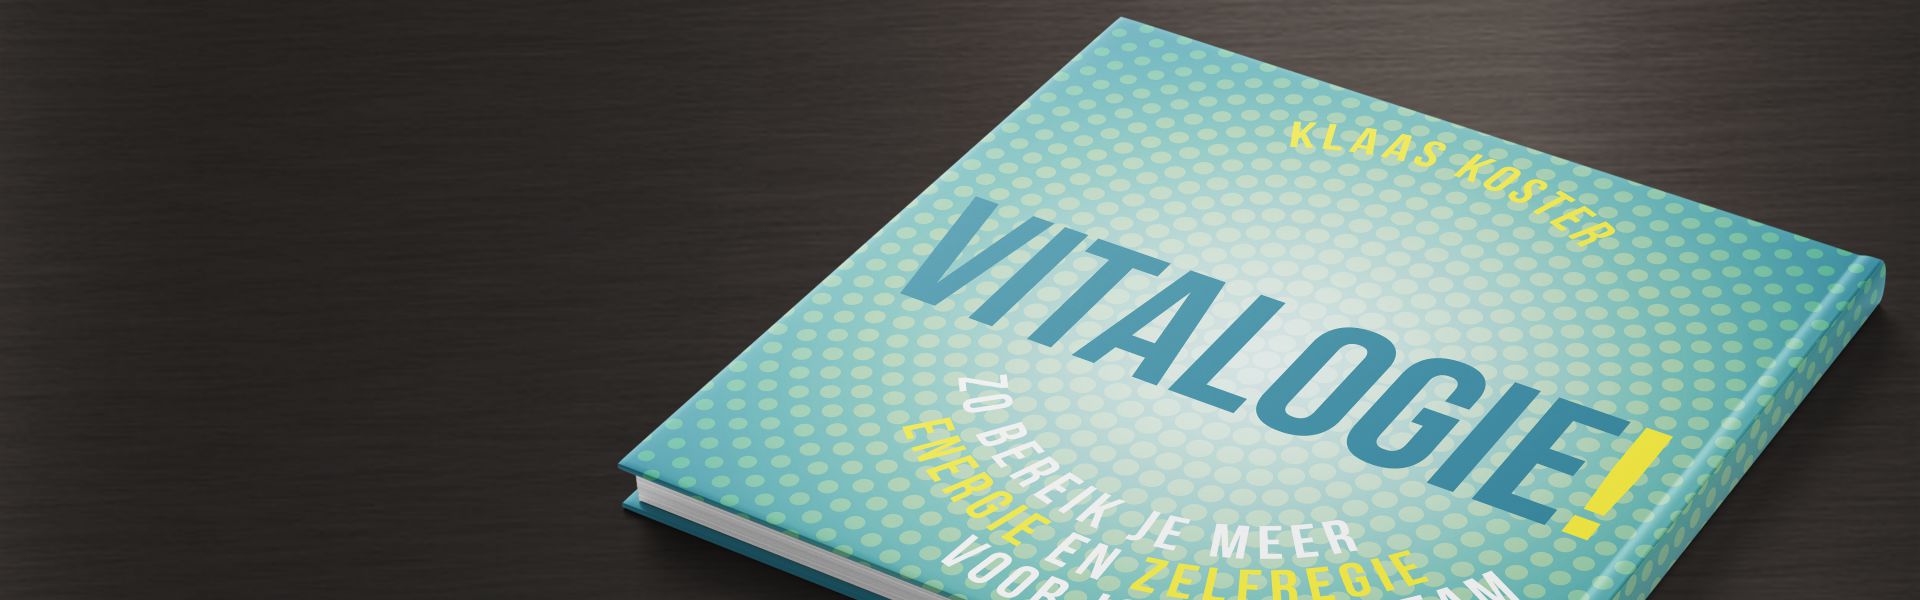 Vitalogie: meer energie en zelfregie voor jou en je team